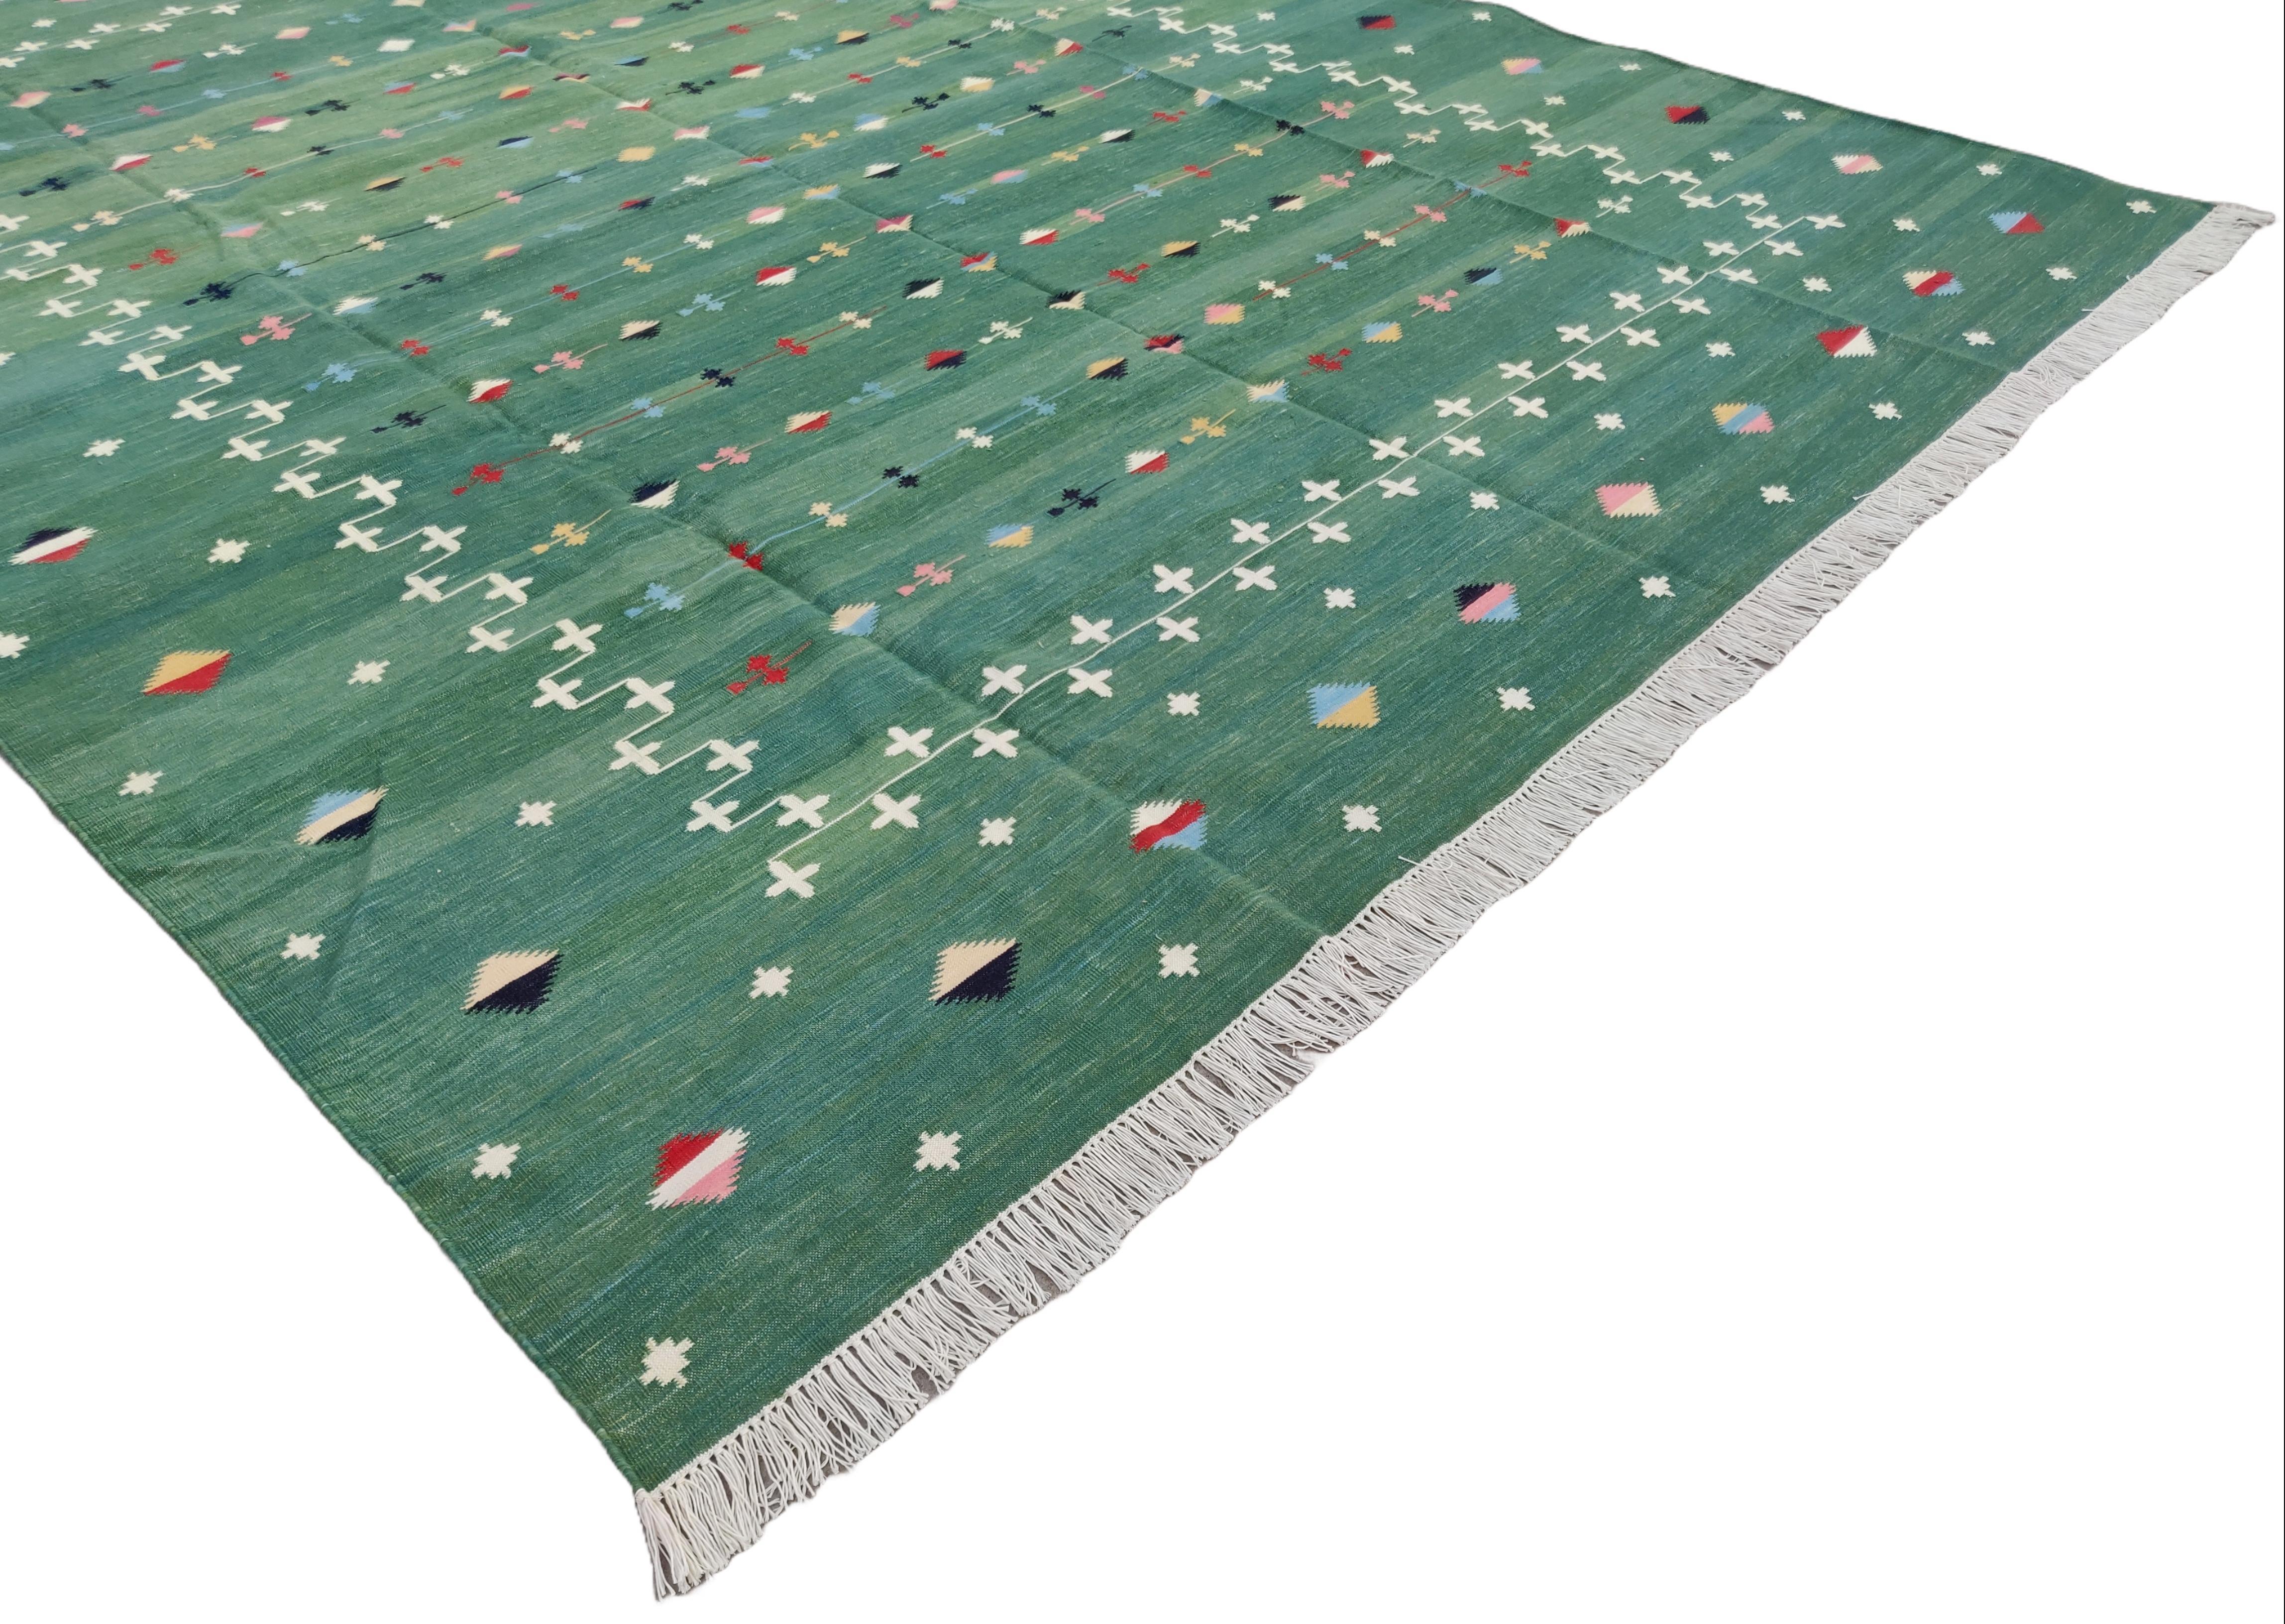 Baumwolle pflanzlich gefärbt Waldgrün und Weiß Shooting Star Teppich-10'x14'
Diese speziellen flachgewebten Dhurries werden aus 15-fachem Garn aus 100% Baumwolle handgewebt. Aufgrund der speziellen Fertigungstechniken, die zur Herstellung unserer